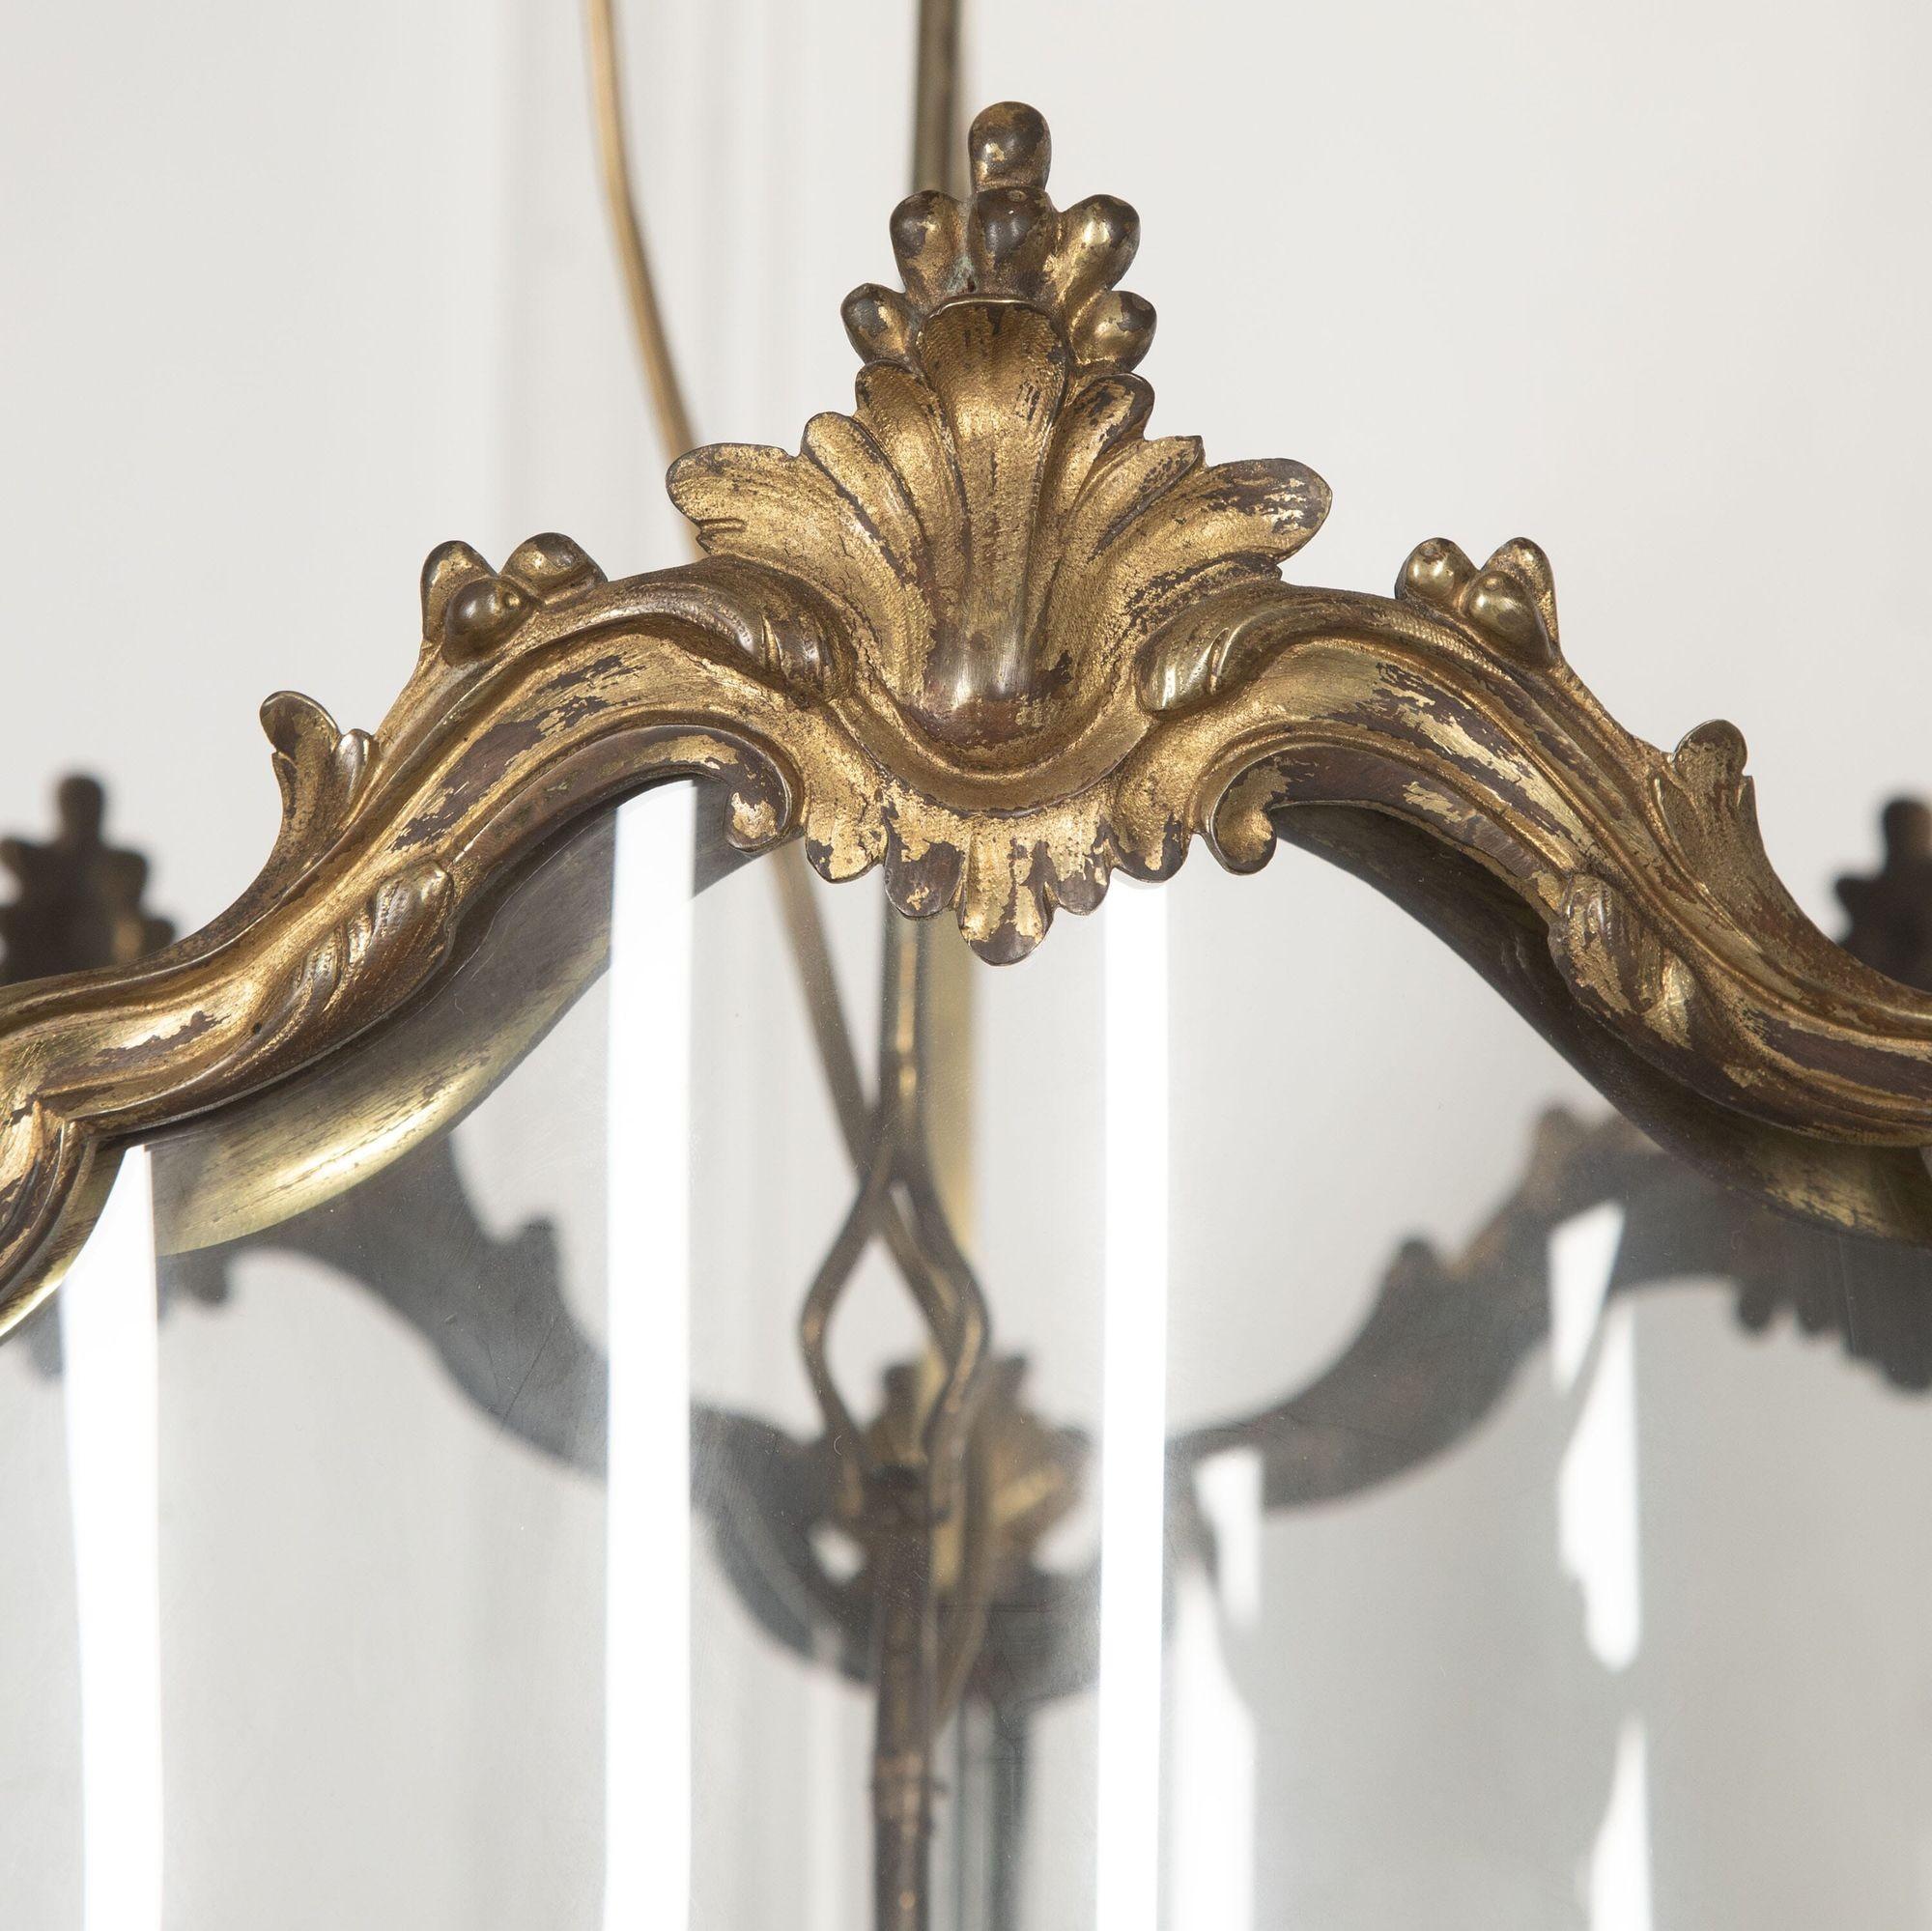 Große englische Flurlaterne aus vergoldeter Bronze aus dem 18. Jahrhundert mit einem fein gegossenen Rahmen in Serpentinenform.
Die gewölbten Glasscheiben werden von ziselierten Akanthusblättern bekrönt und sitzen auf Blatt- und Beerenknäufen.
Die